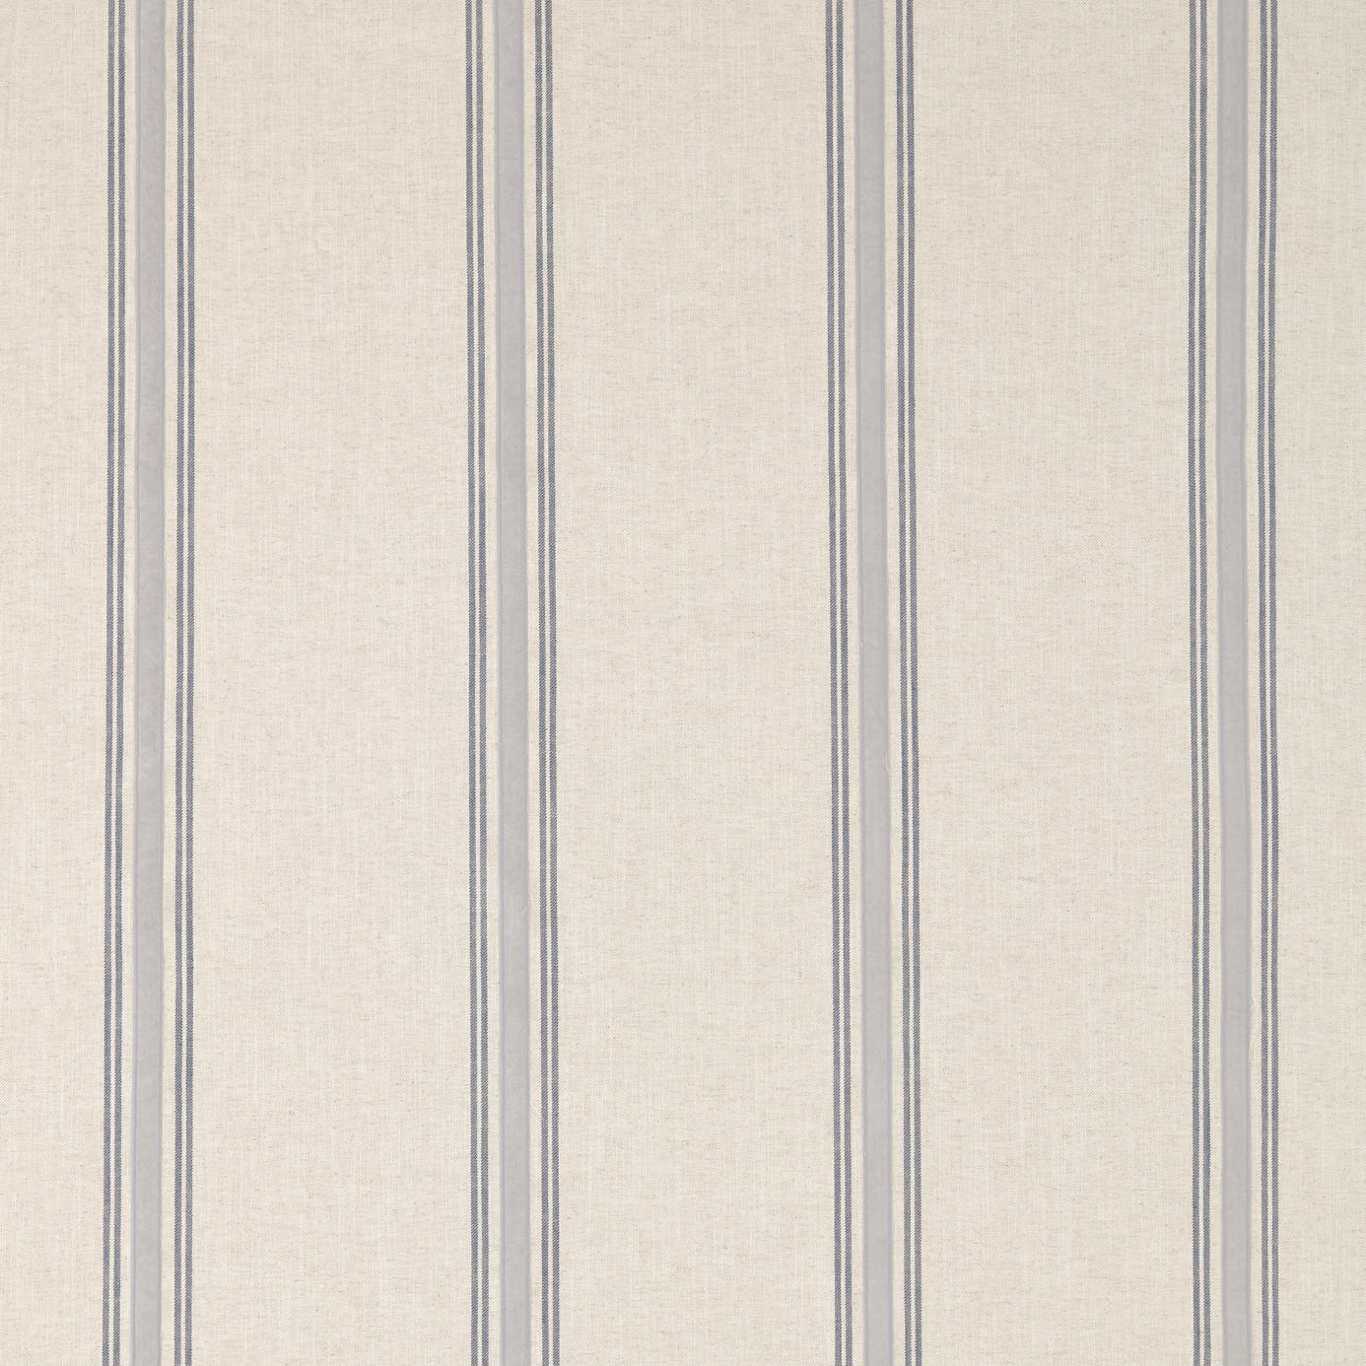 Hockley Stripe Indigo Fabric by SAN